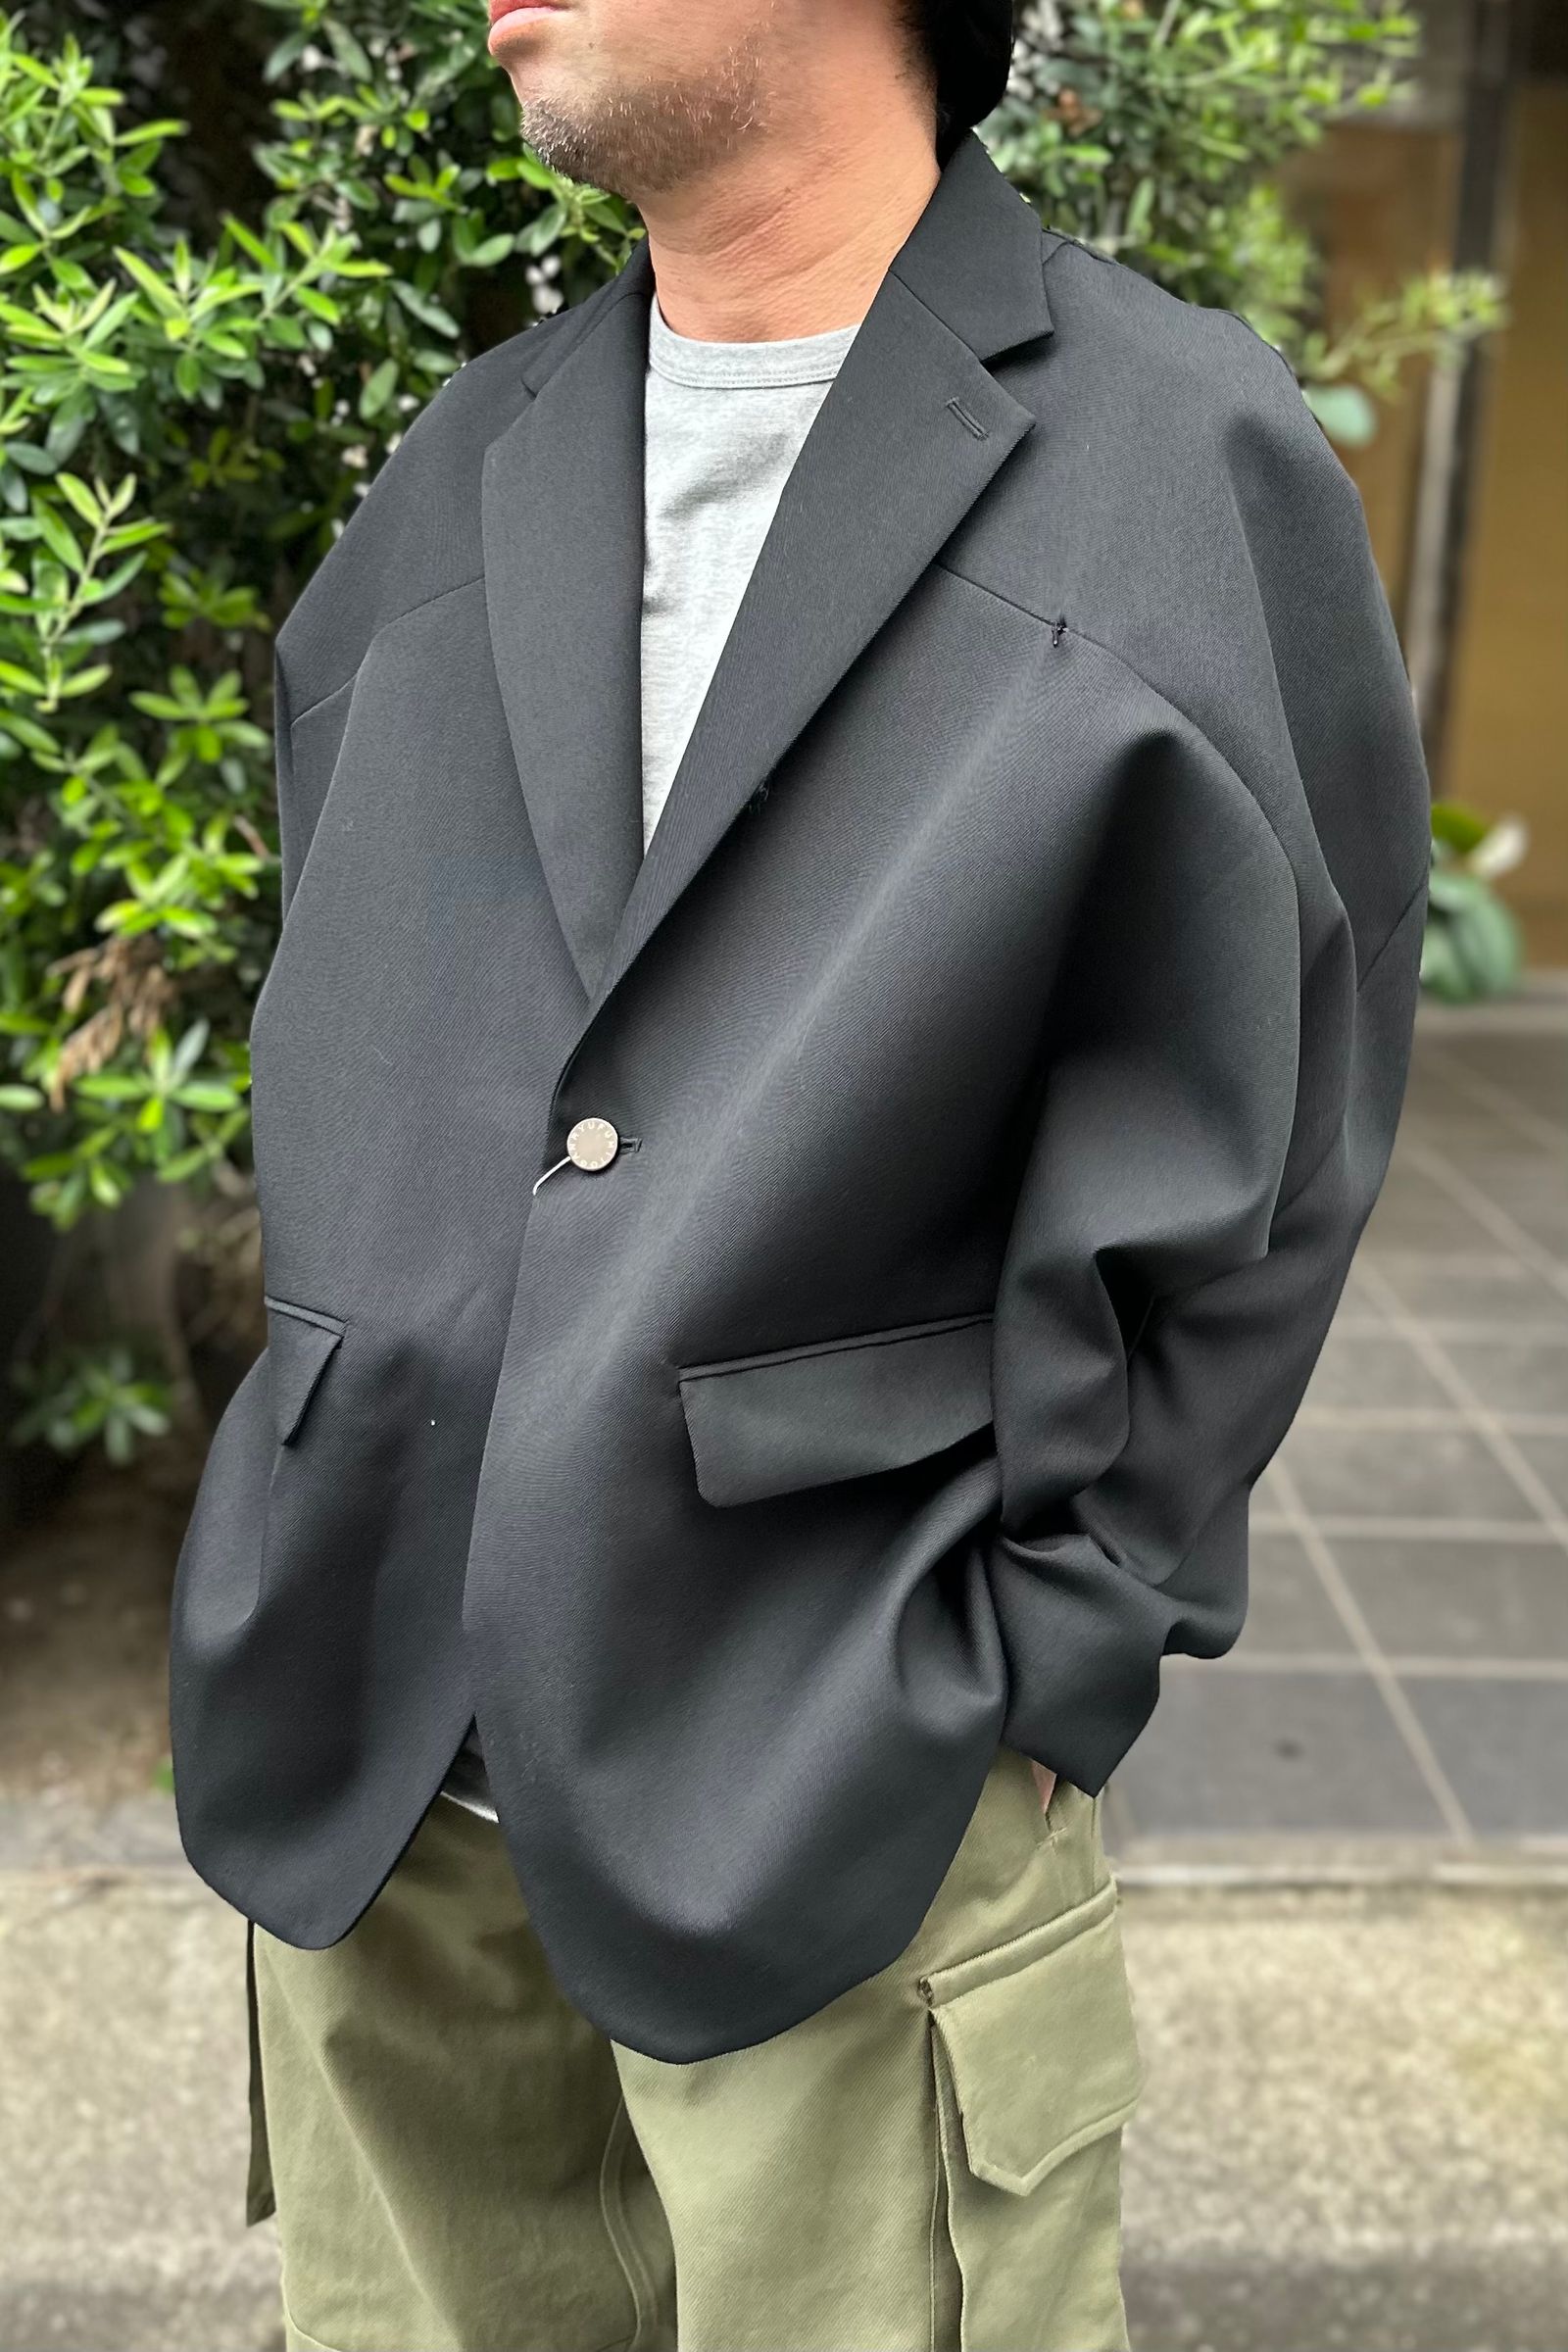 FUMITO GANRYU - Kinetic Jacket -black- 23aw | asterisk